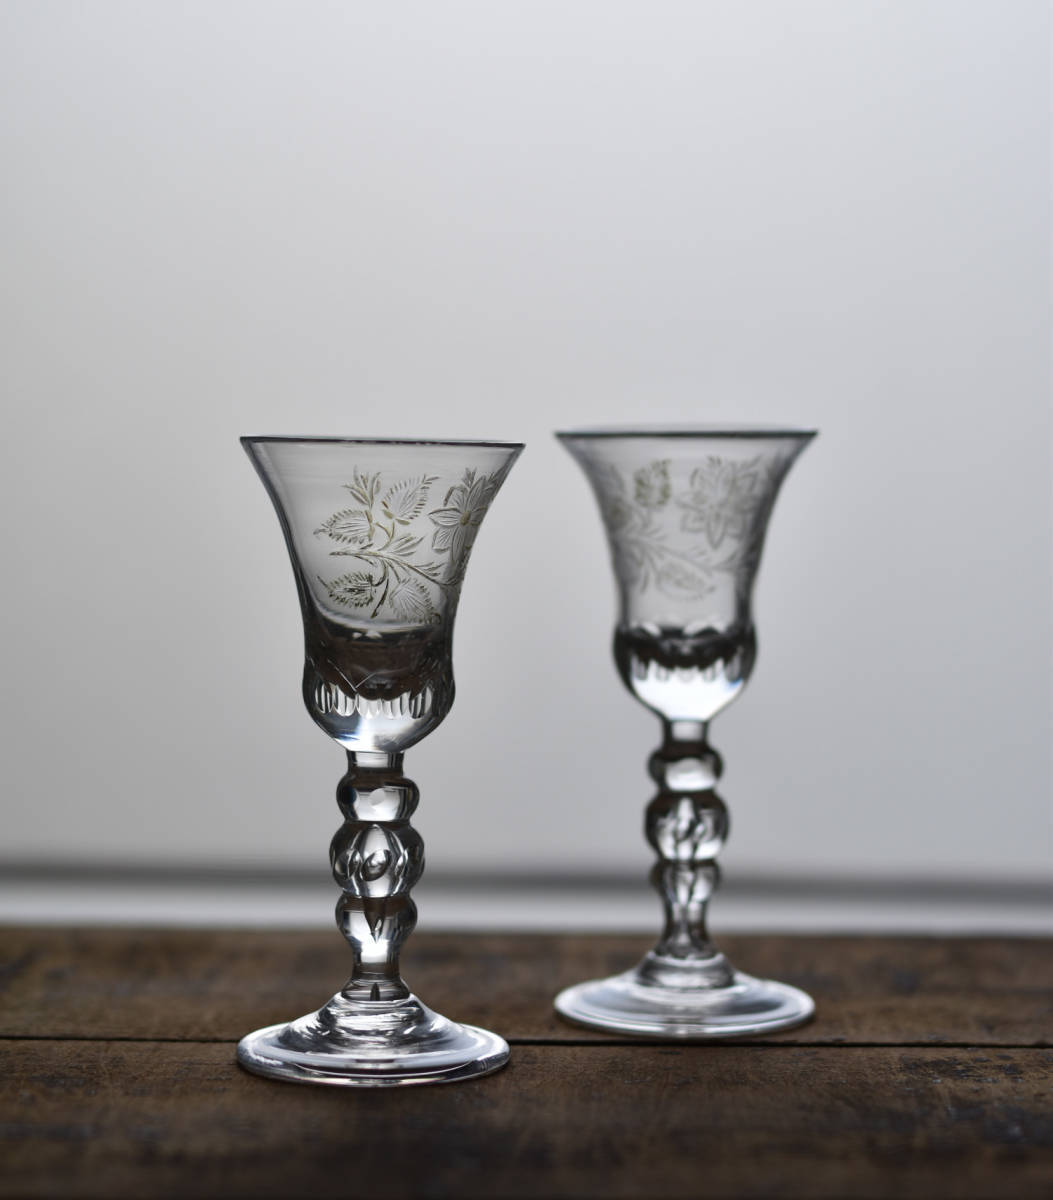 18世紀 手吹きガラスのカット ポートワイングラス / 1700年代・ポルトガル / 古道具 アンティーク 硝子 アペリティフ_画像6